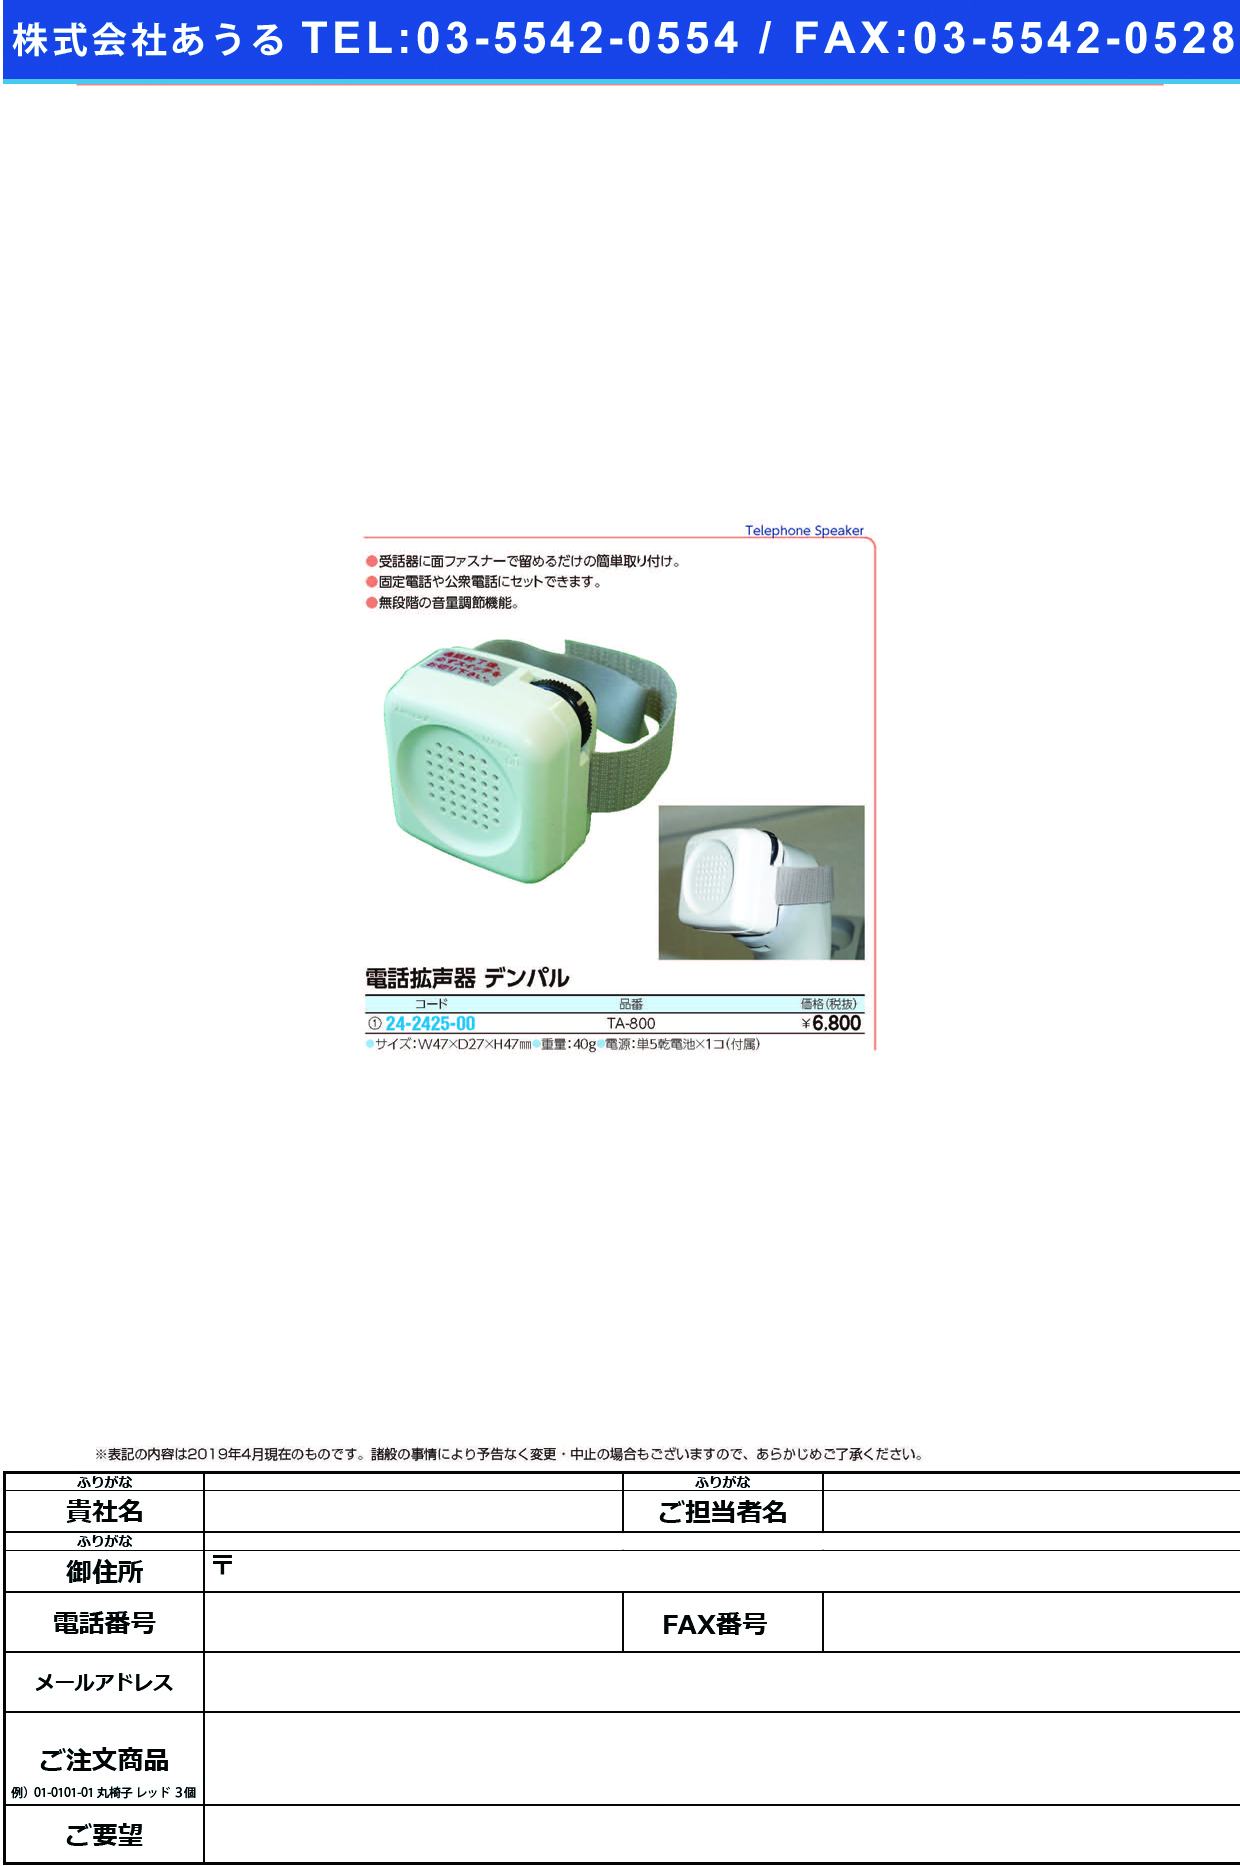 (24-2425-00)電話拡声器デンパル TA-800 ﾃﾞﾝﾜｶｸｾｲｷﾃﾞﾝﾊﾟﾙ【1個単位】【2019年カタログ商品】